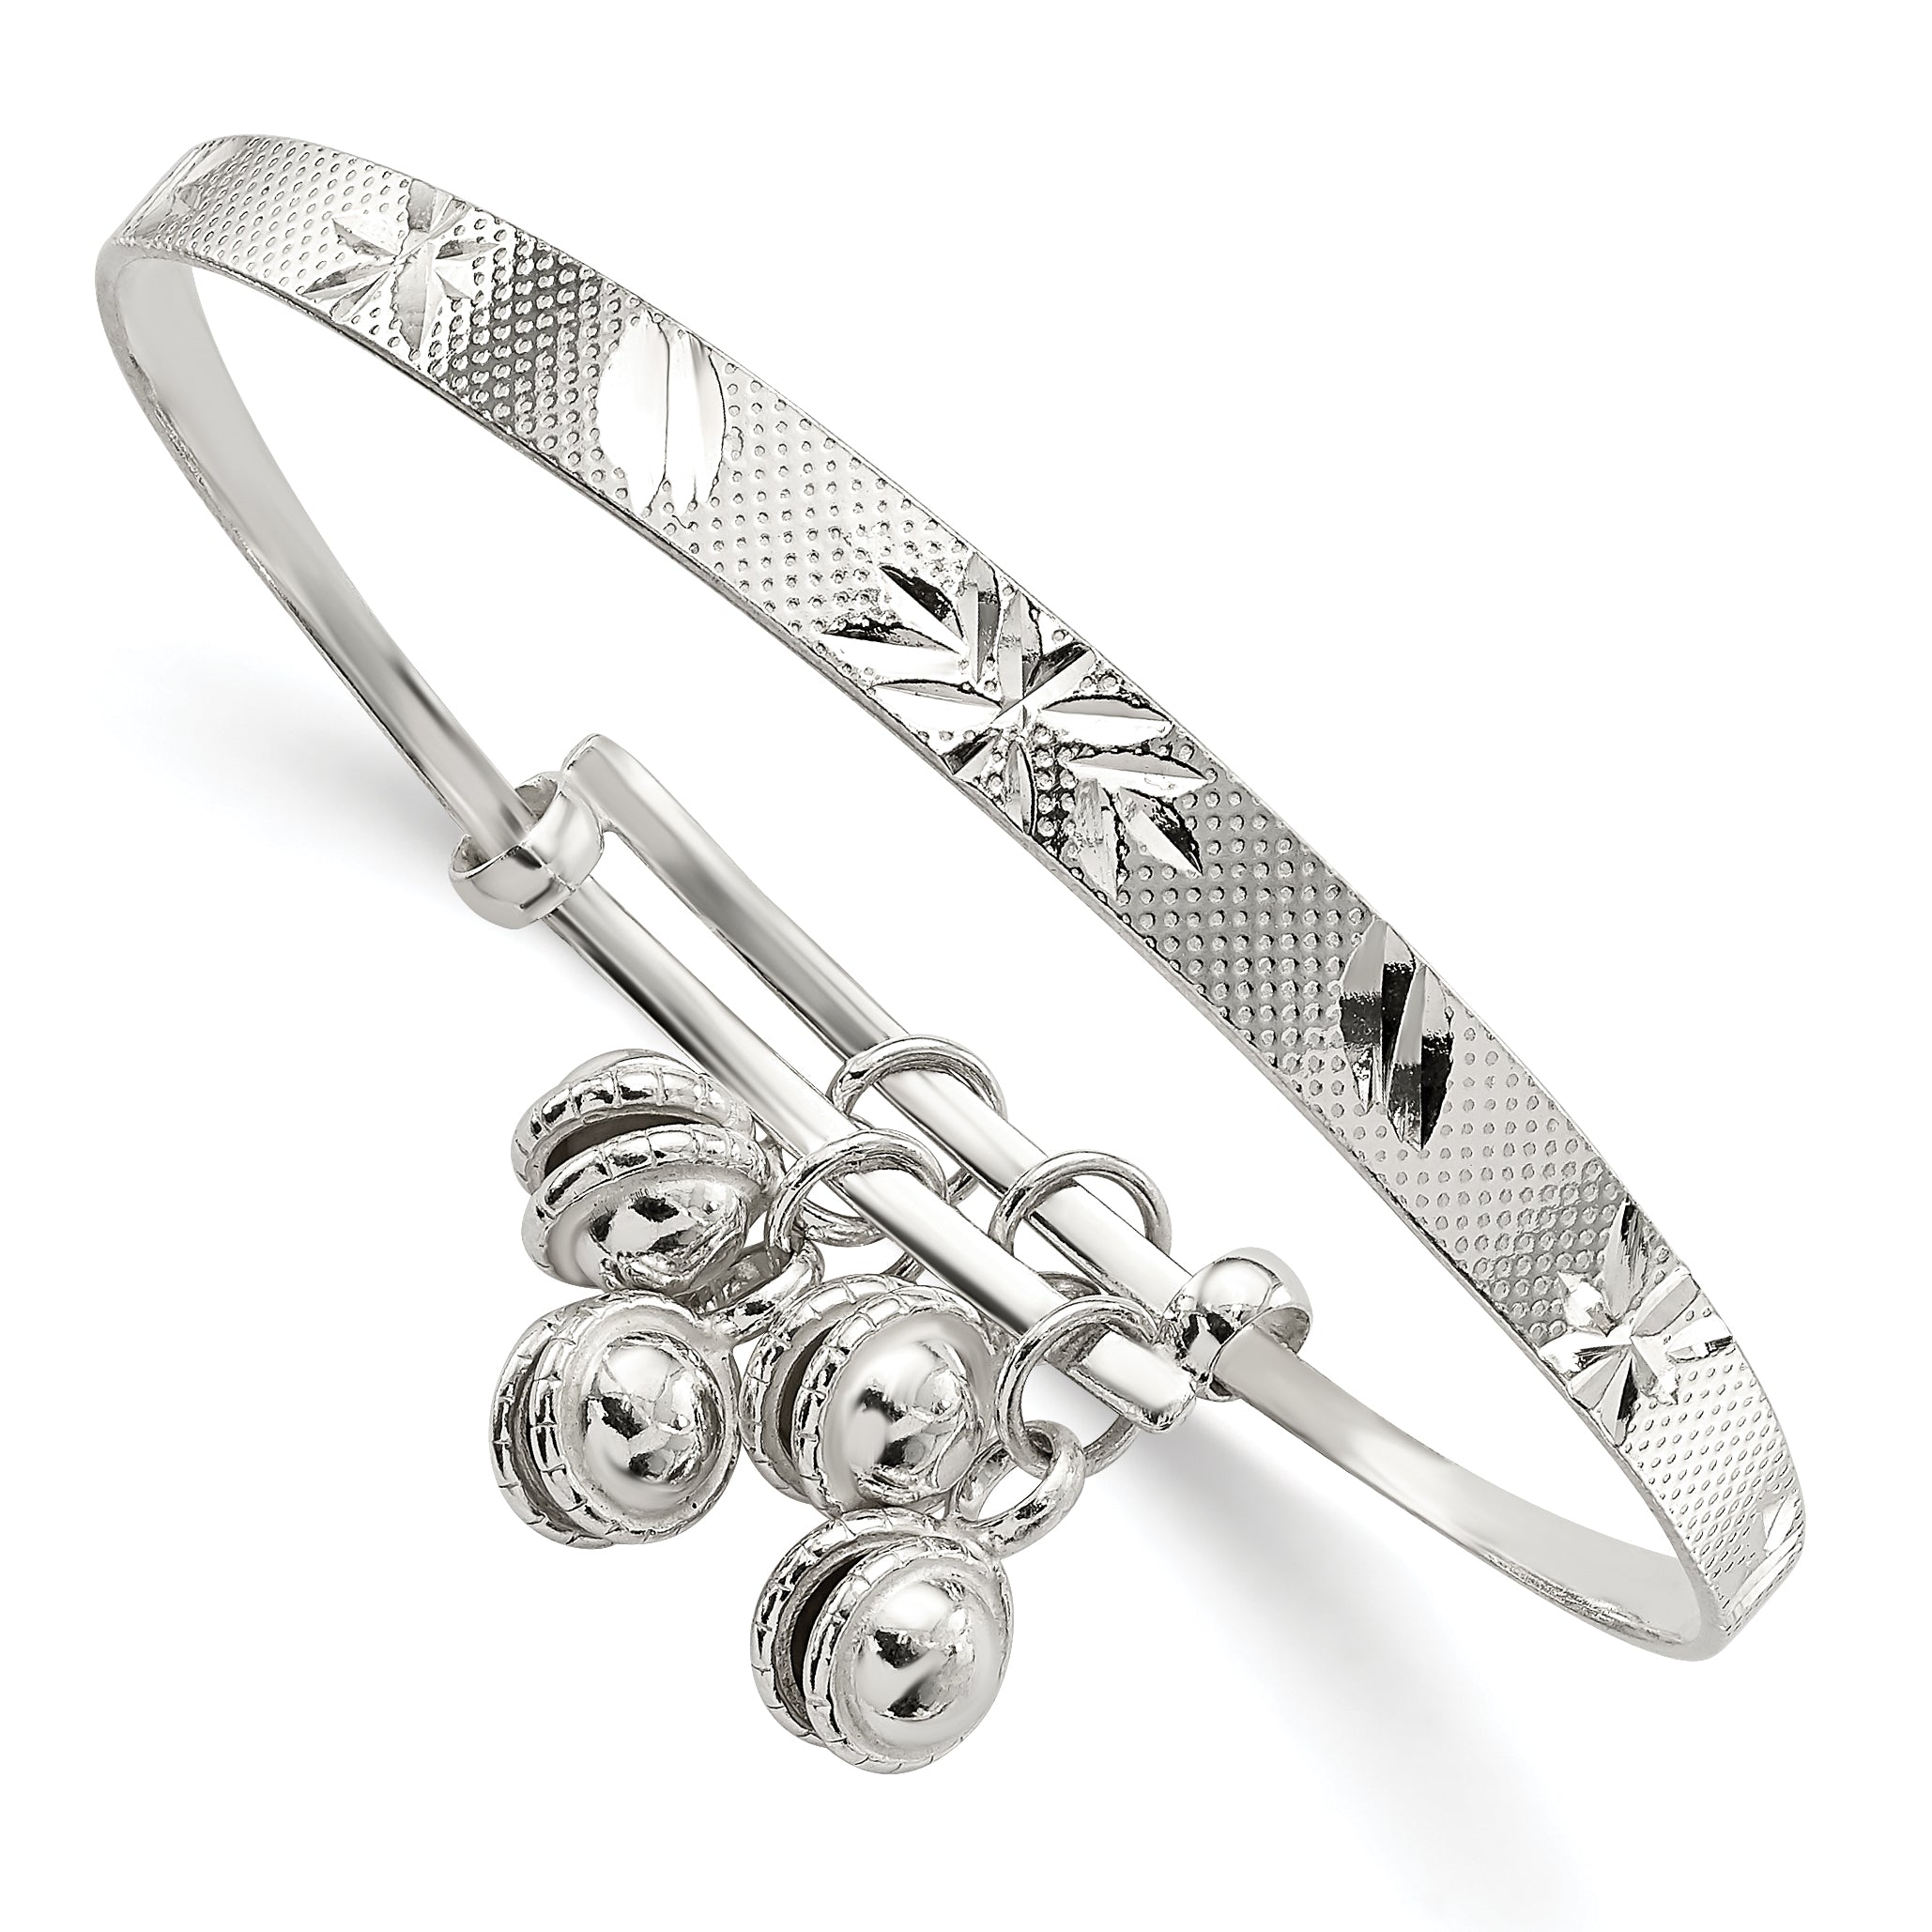 Sterling Silver D/C & Textured Bells Adjustable Children's Bangle Bracelet